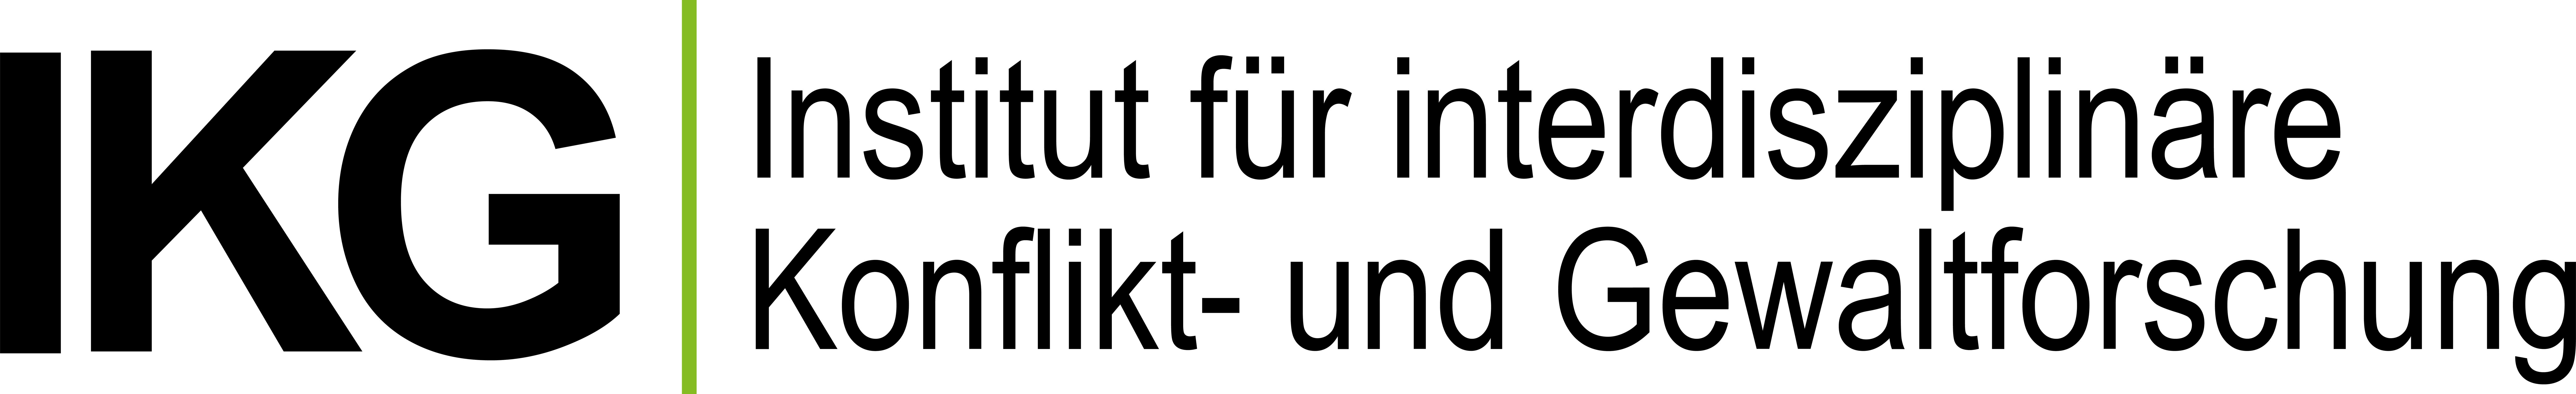 Logo Institut für interdisziplinäre Konflikt- und Gewaltforschung (IKG)